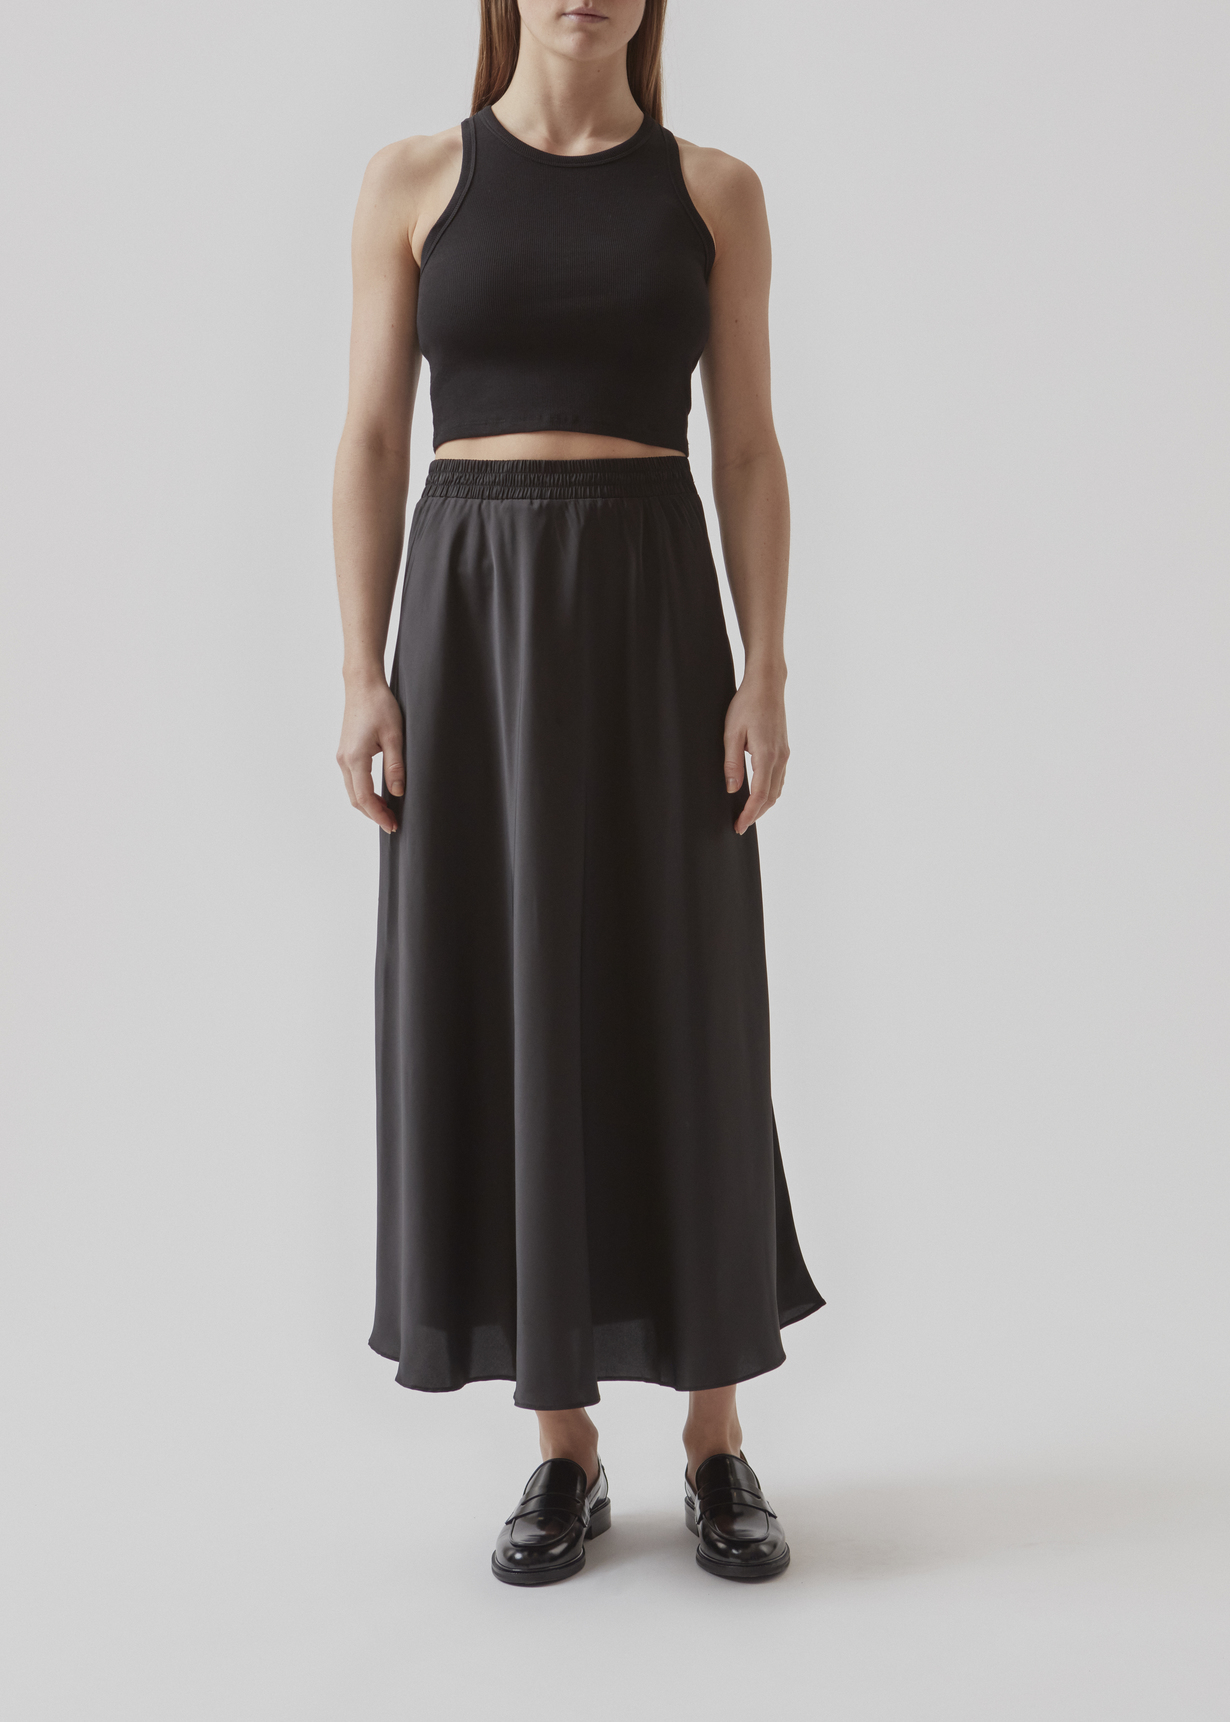 modstrom-reignmd-skirt-black-press-model-front.jpg